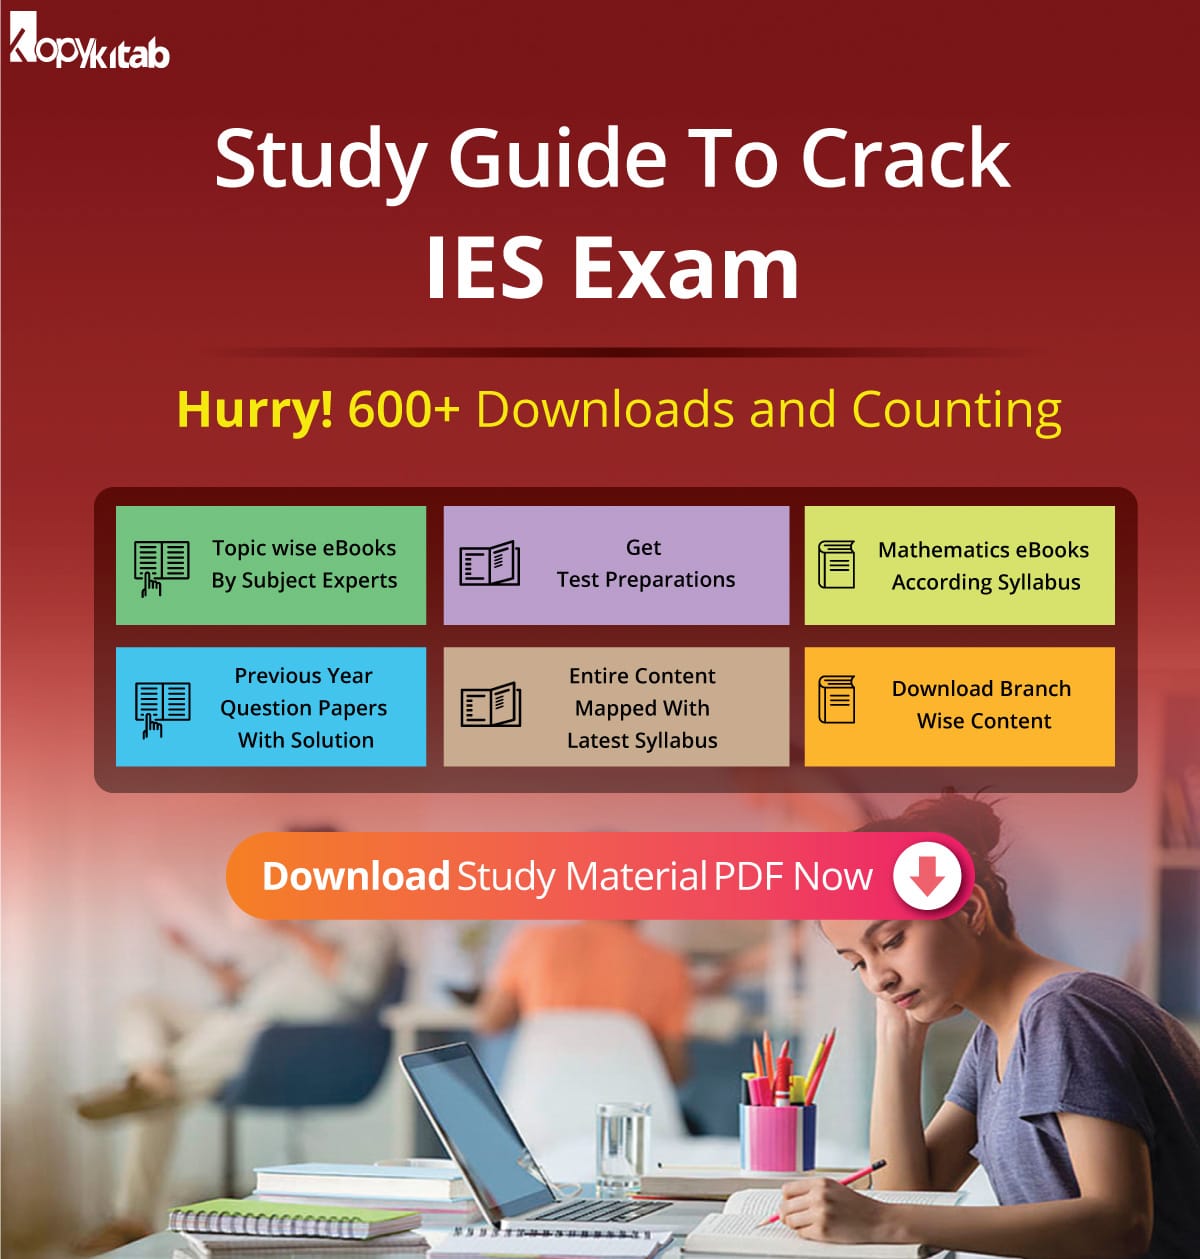 Study Guide to Crack IES Exam